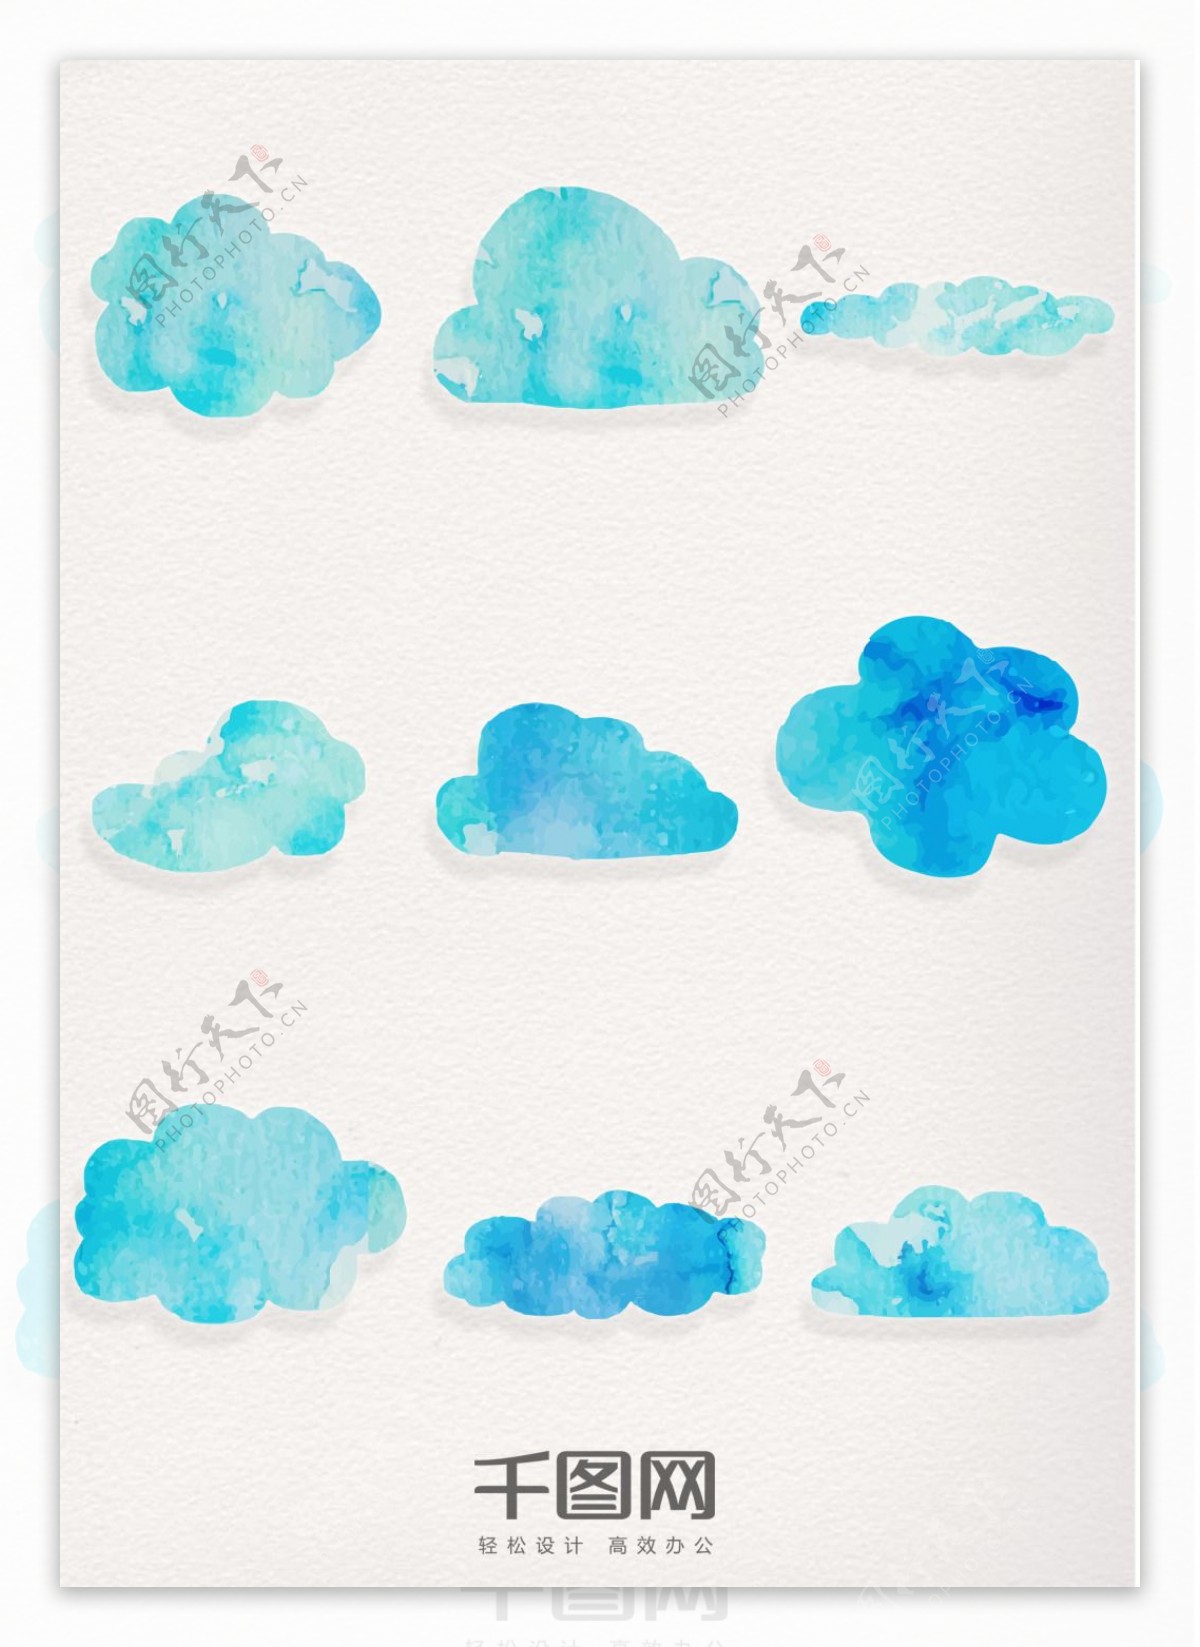 水彩蓝色云朵装饰图案